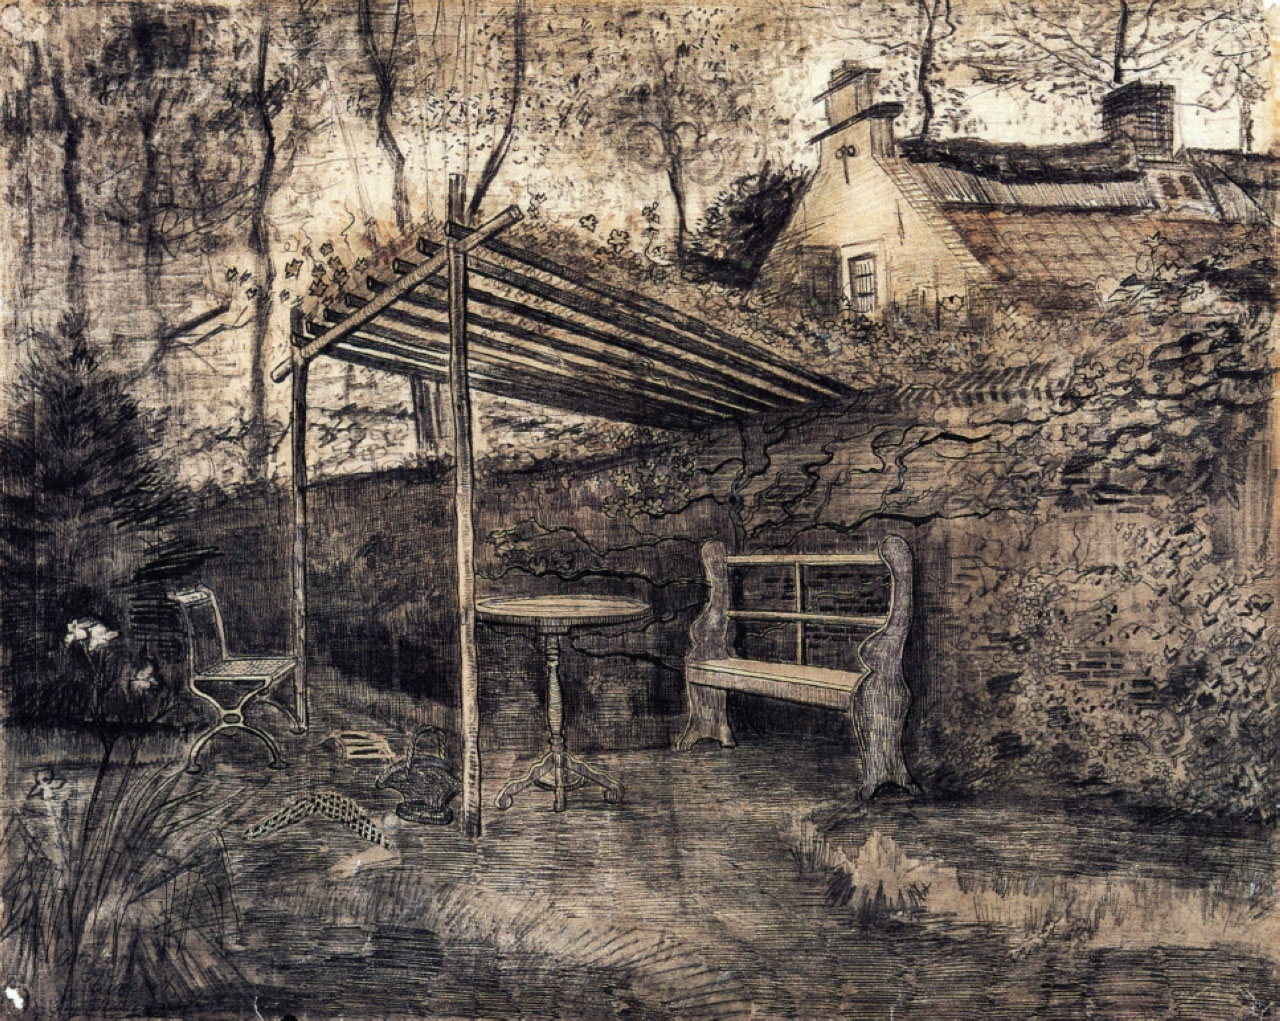 Винсент Ван Гог. "Сад дома священника с беседкой". 1881.